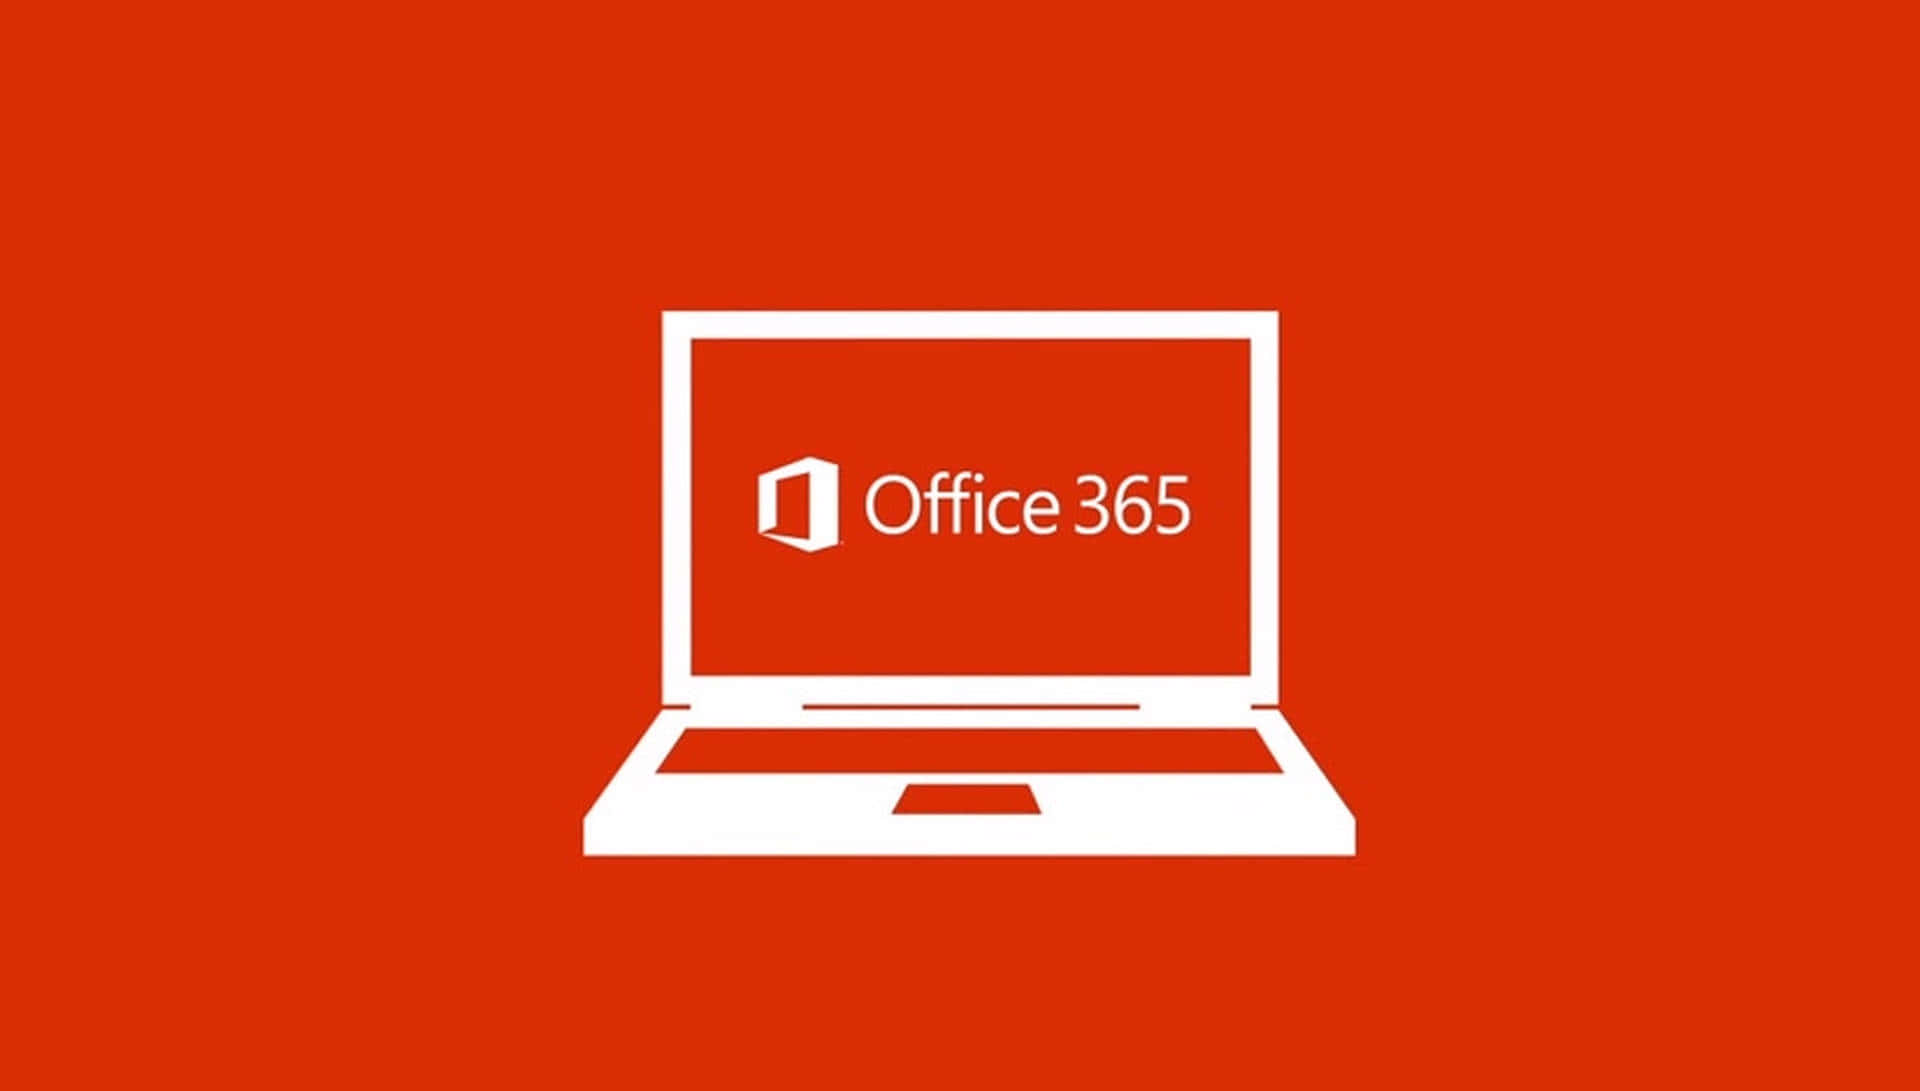 Office365-logotyp På En Röd Bakgrund.